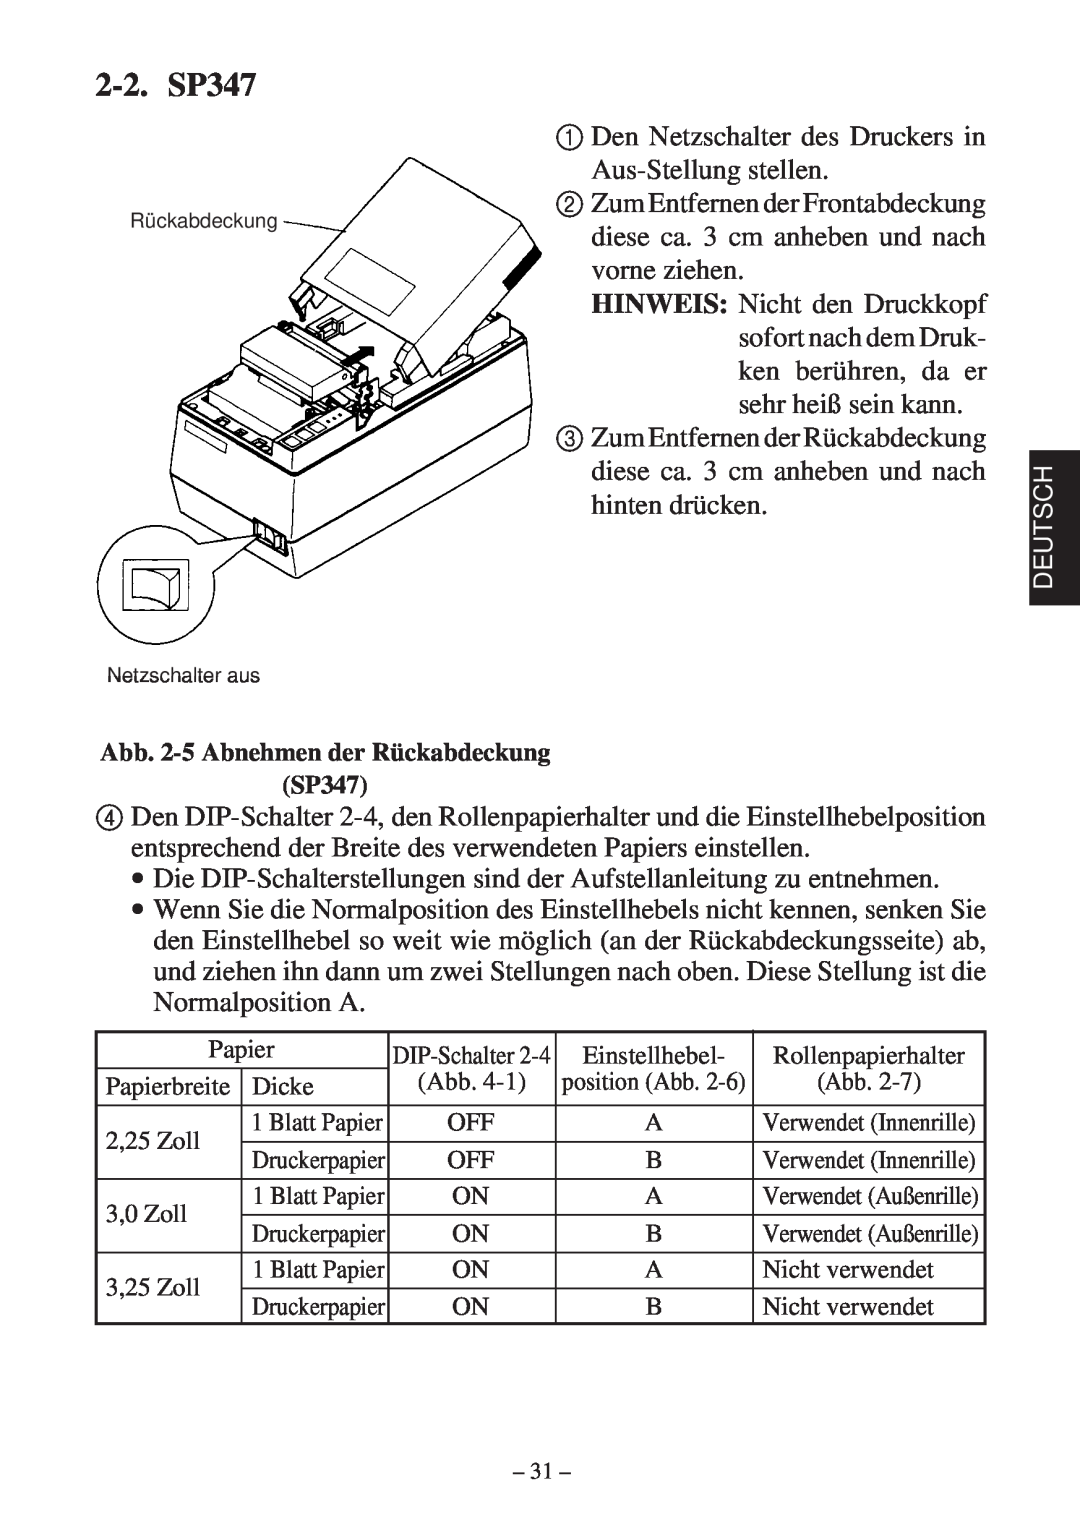 Star Micronics 347F user manual 2-2. SP347, Abb. 2-5 Abnehmen der Rückabdeckung SP347, Netzschalter aus 